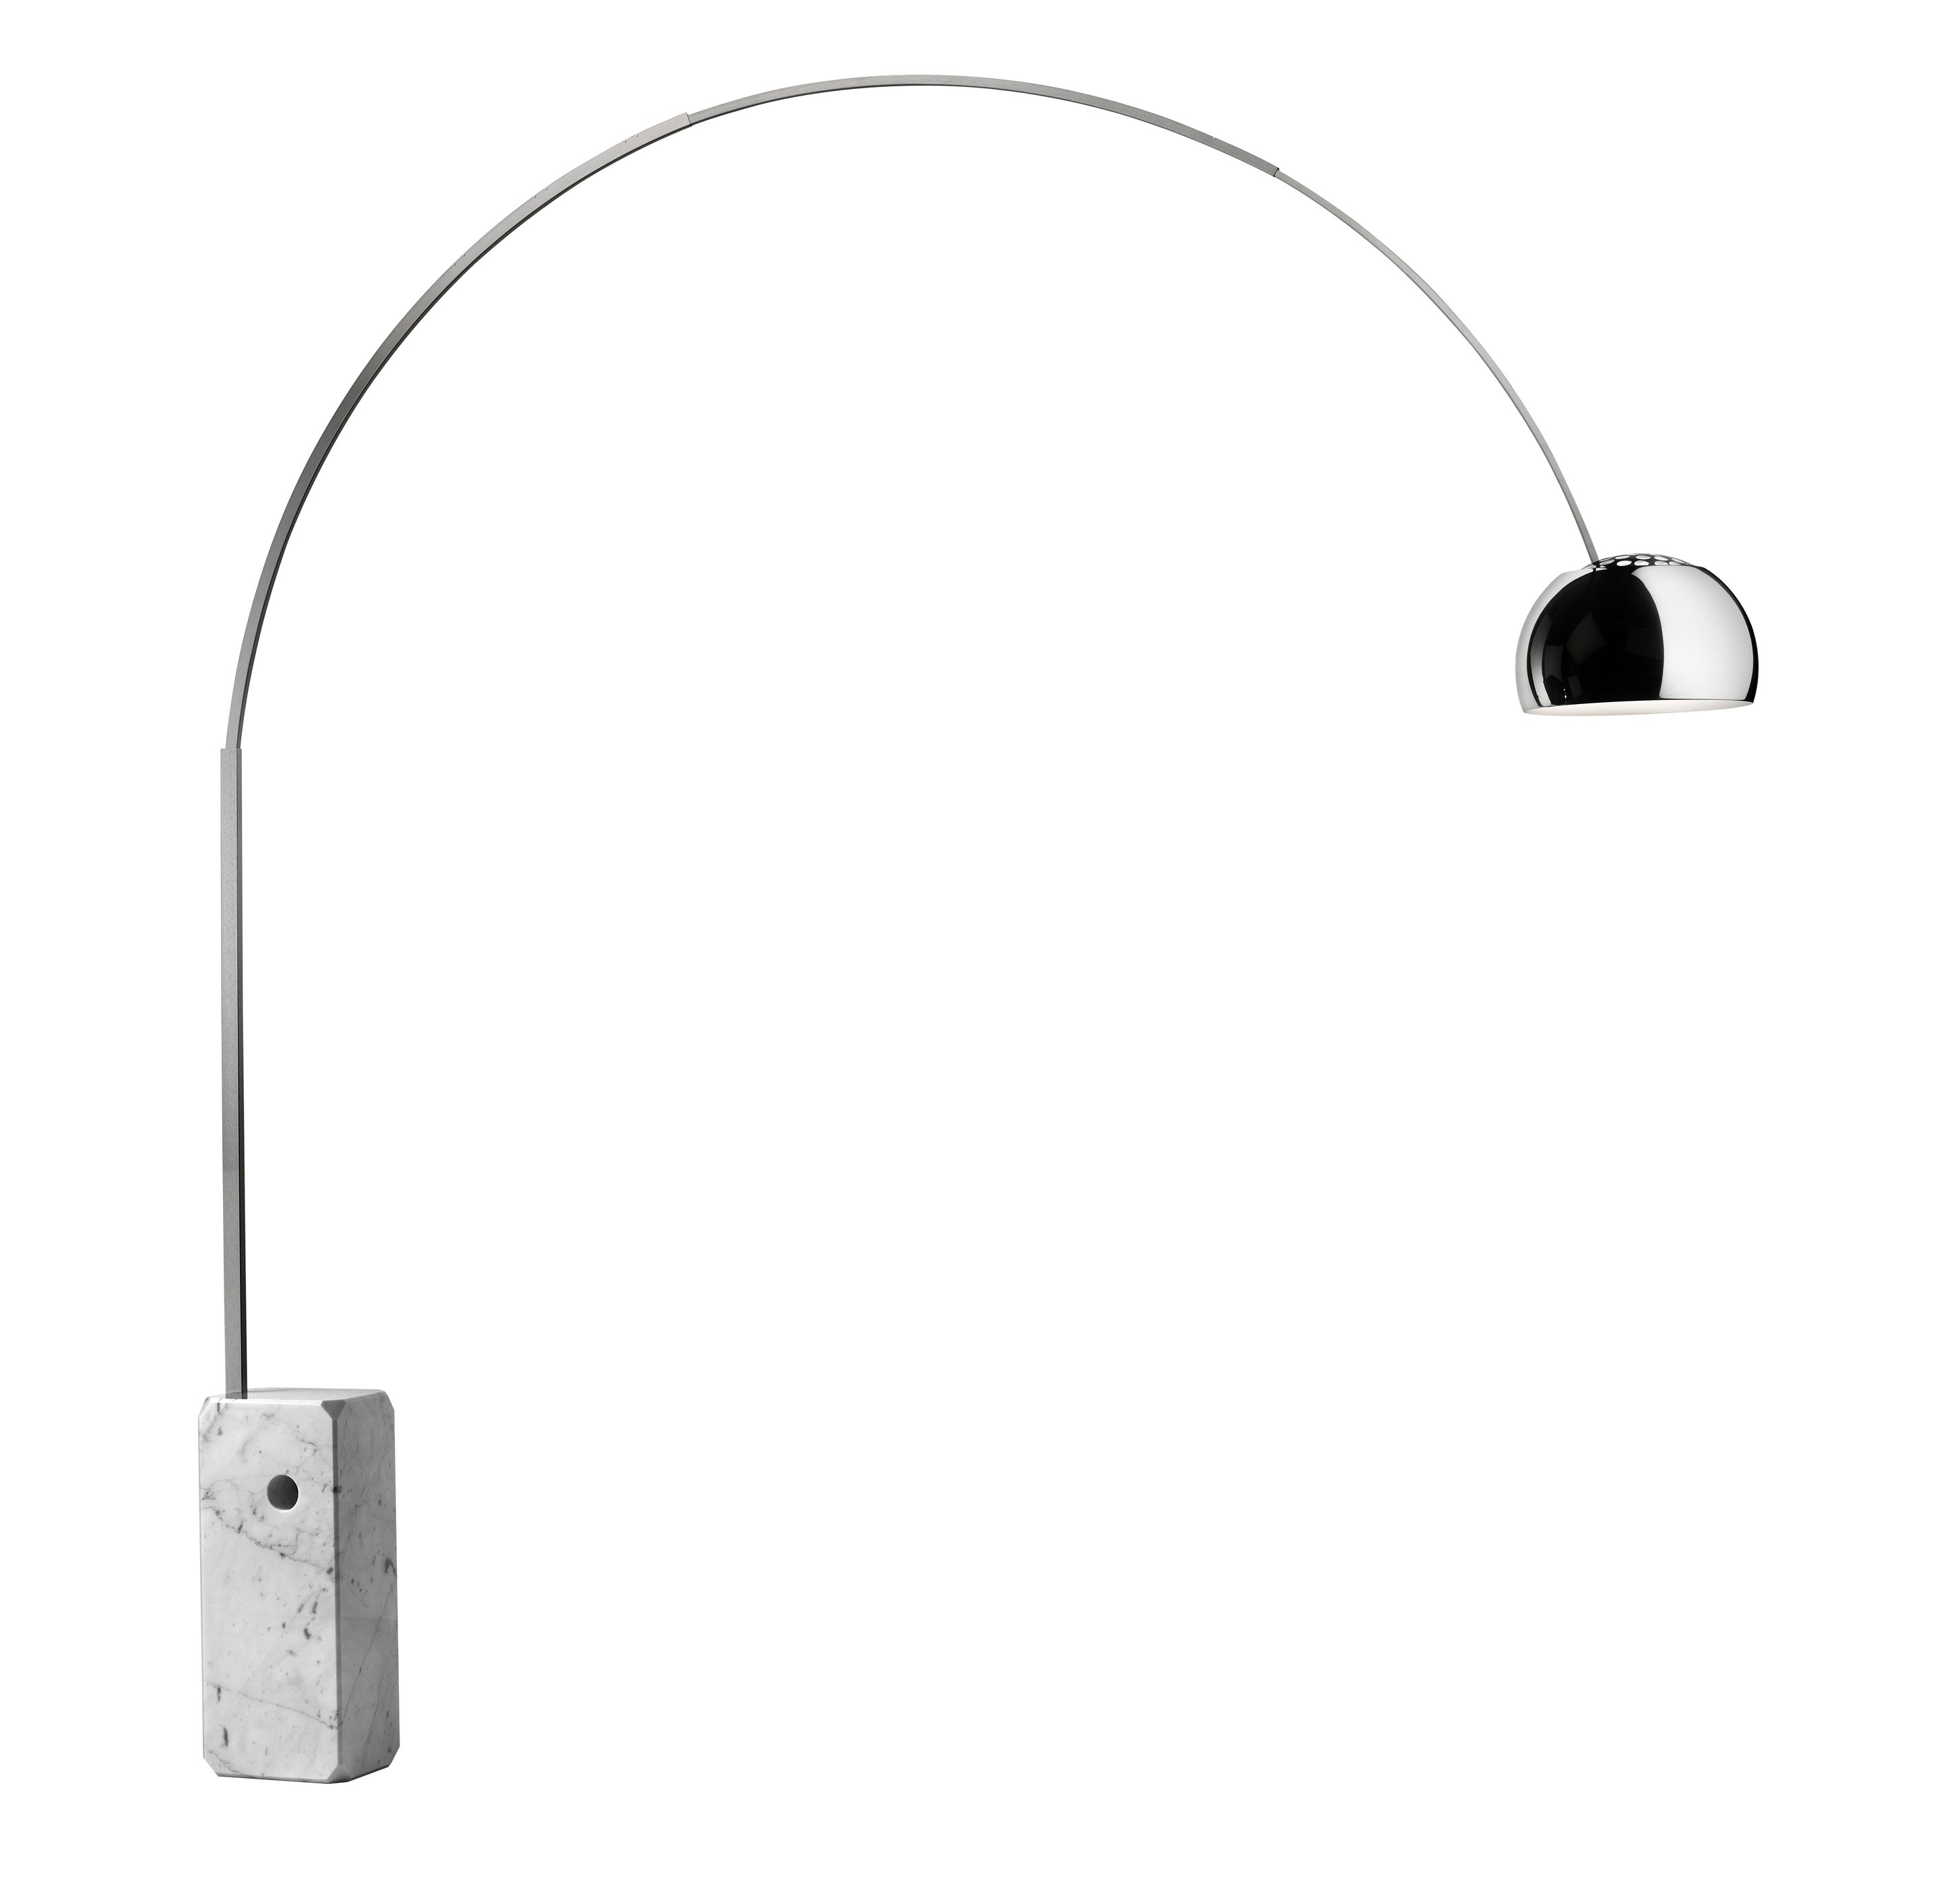 Arco lamp Buy online at Deplain.com